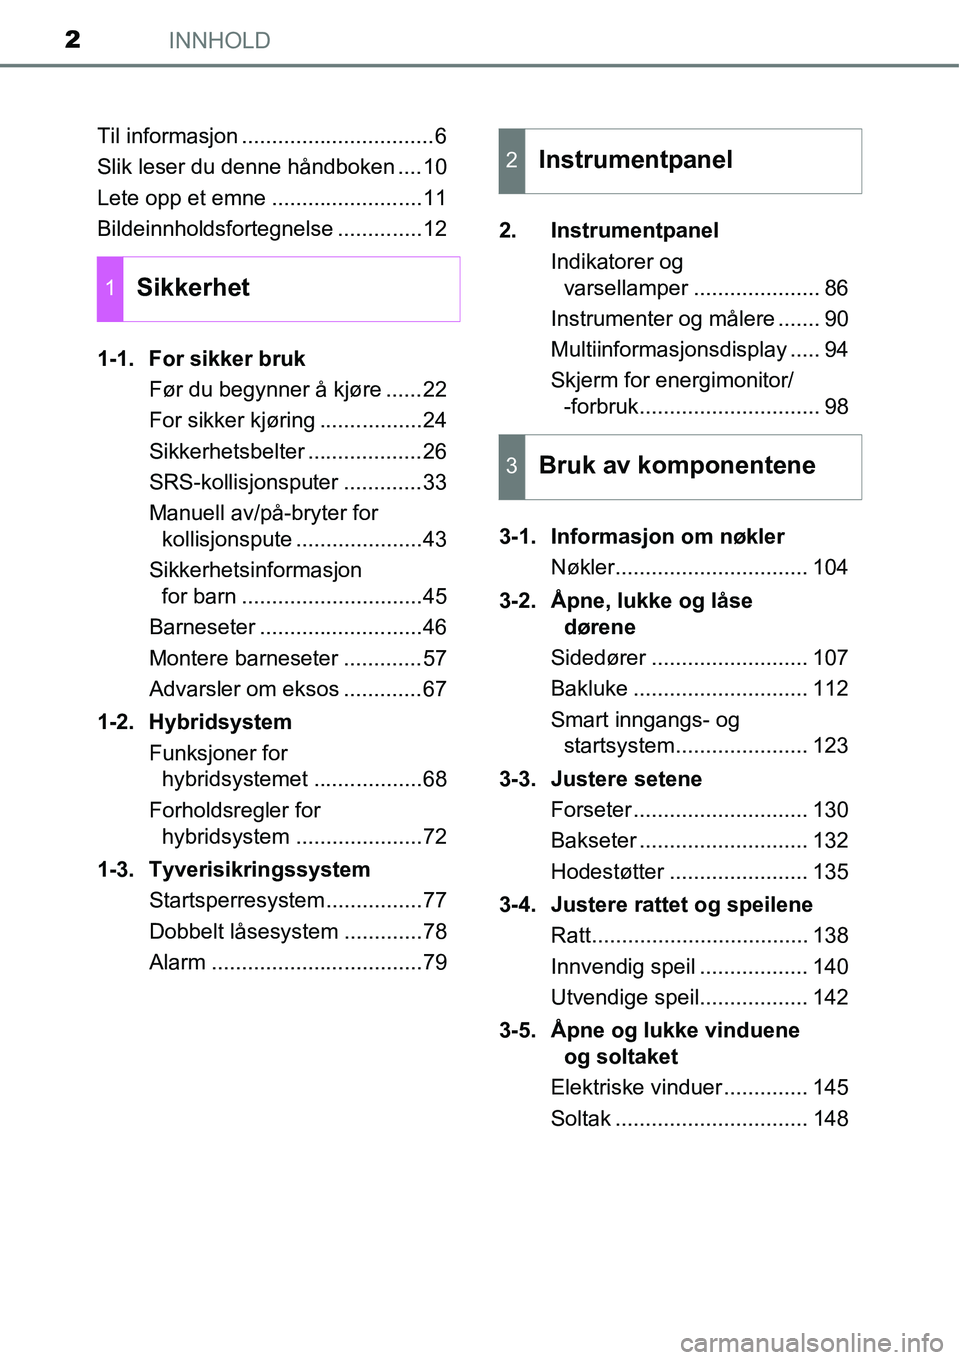 TOYOTA RAV4 2015  Instruksjoner for bruk (in Norwegian) INNHOLD2
Til informasjon ................................6
Slik leser du denne håndboken ....10
Lete opp et emne .........................11
Bildeinnholdsfortegnelse ..............12
1-1. For sikker 